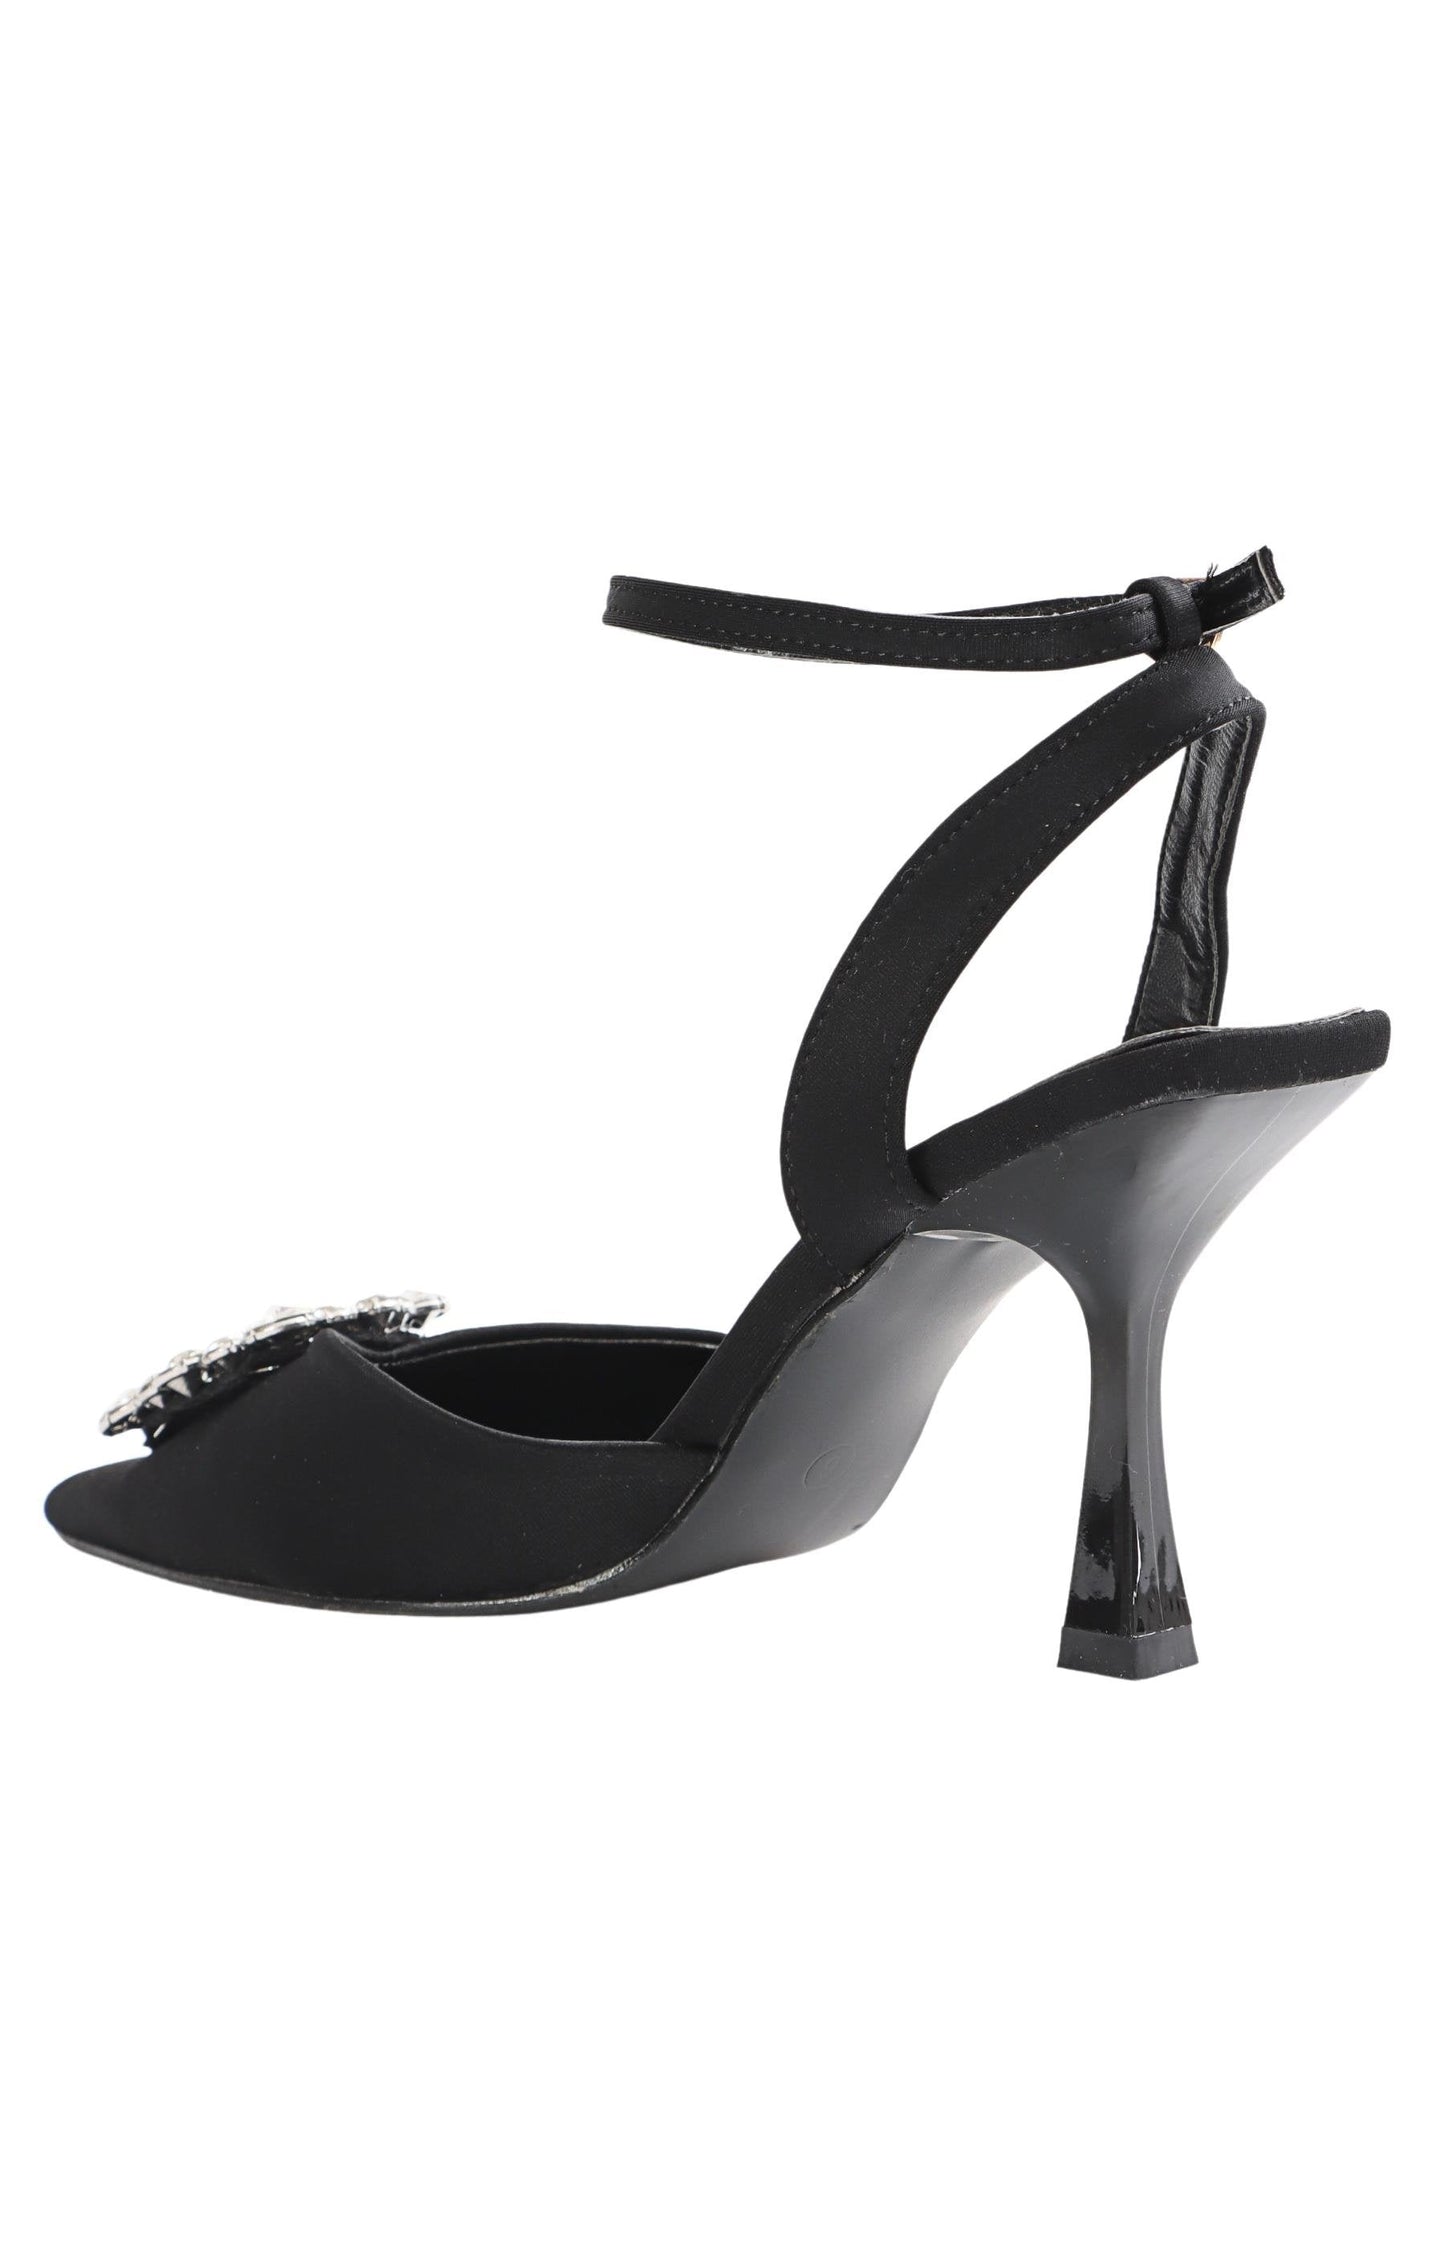 Ladies Pointed Toe Ankle Strap Heels - Black